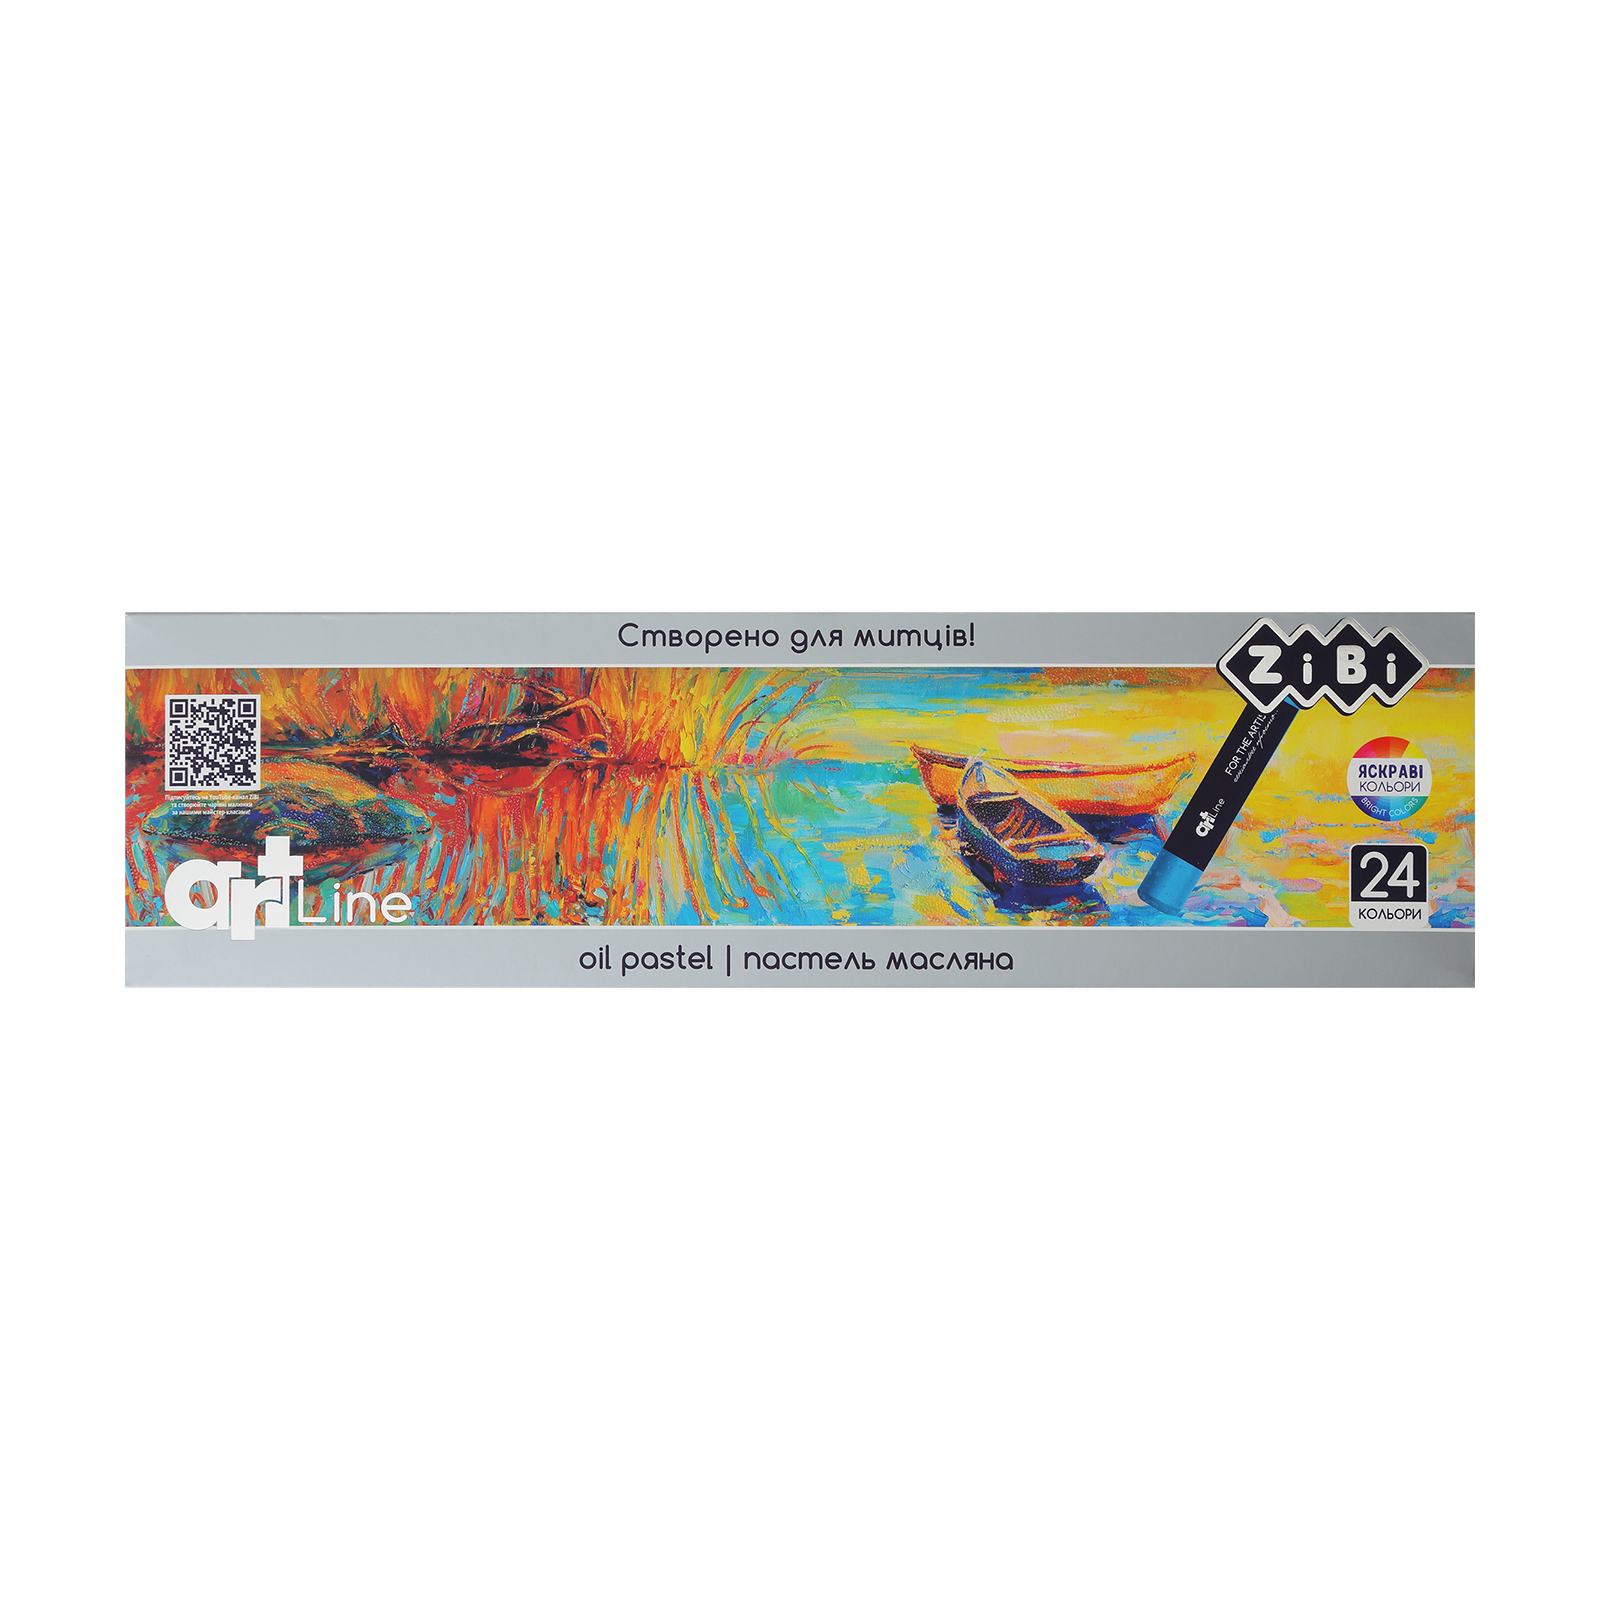 Пастель ZiBi ART Line -2 масляная художественная, 24 цветов (ZB.2492)